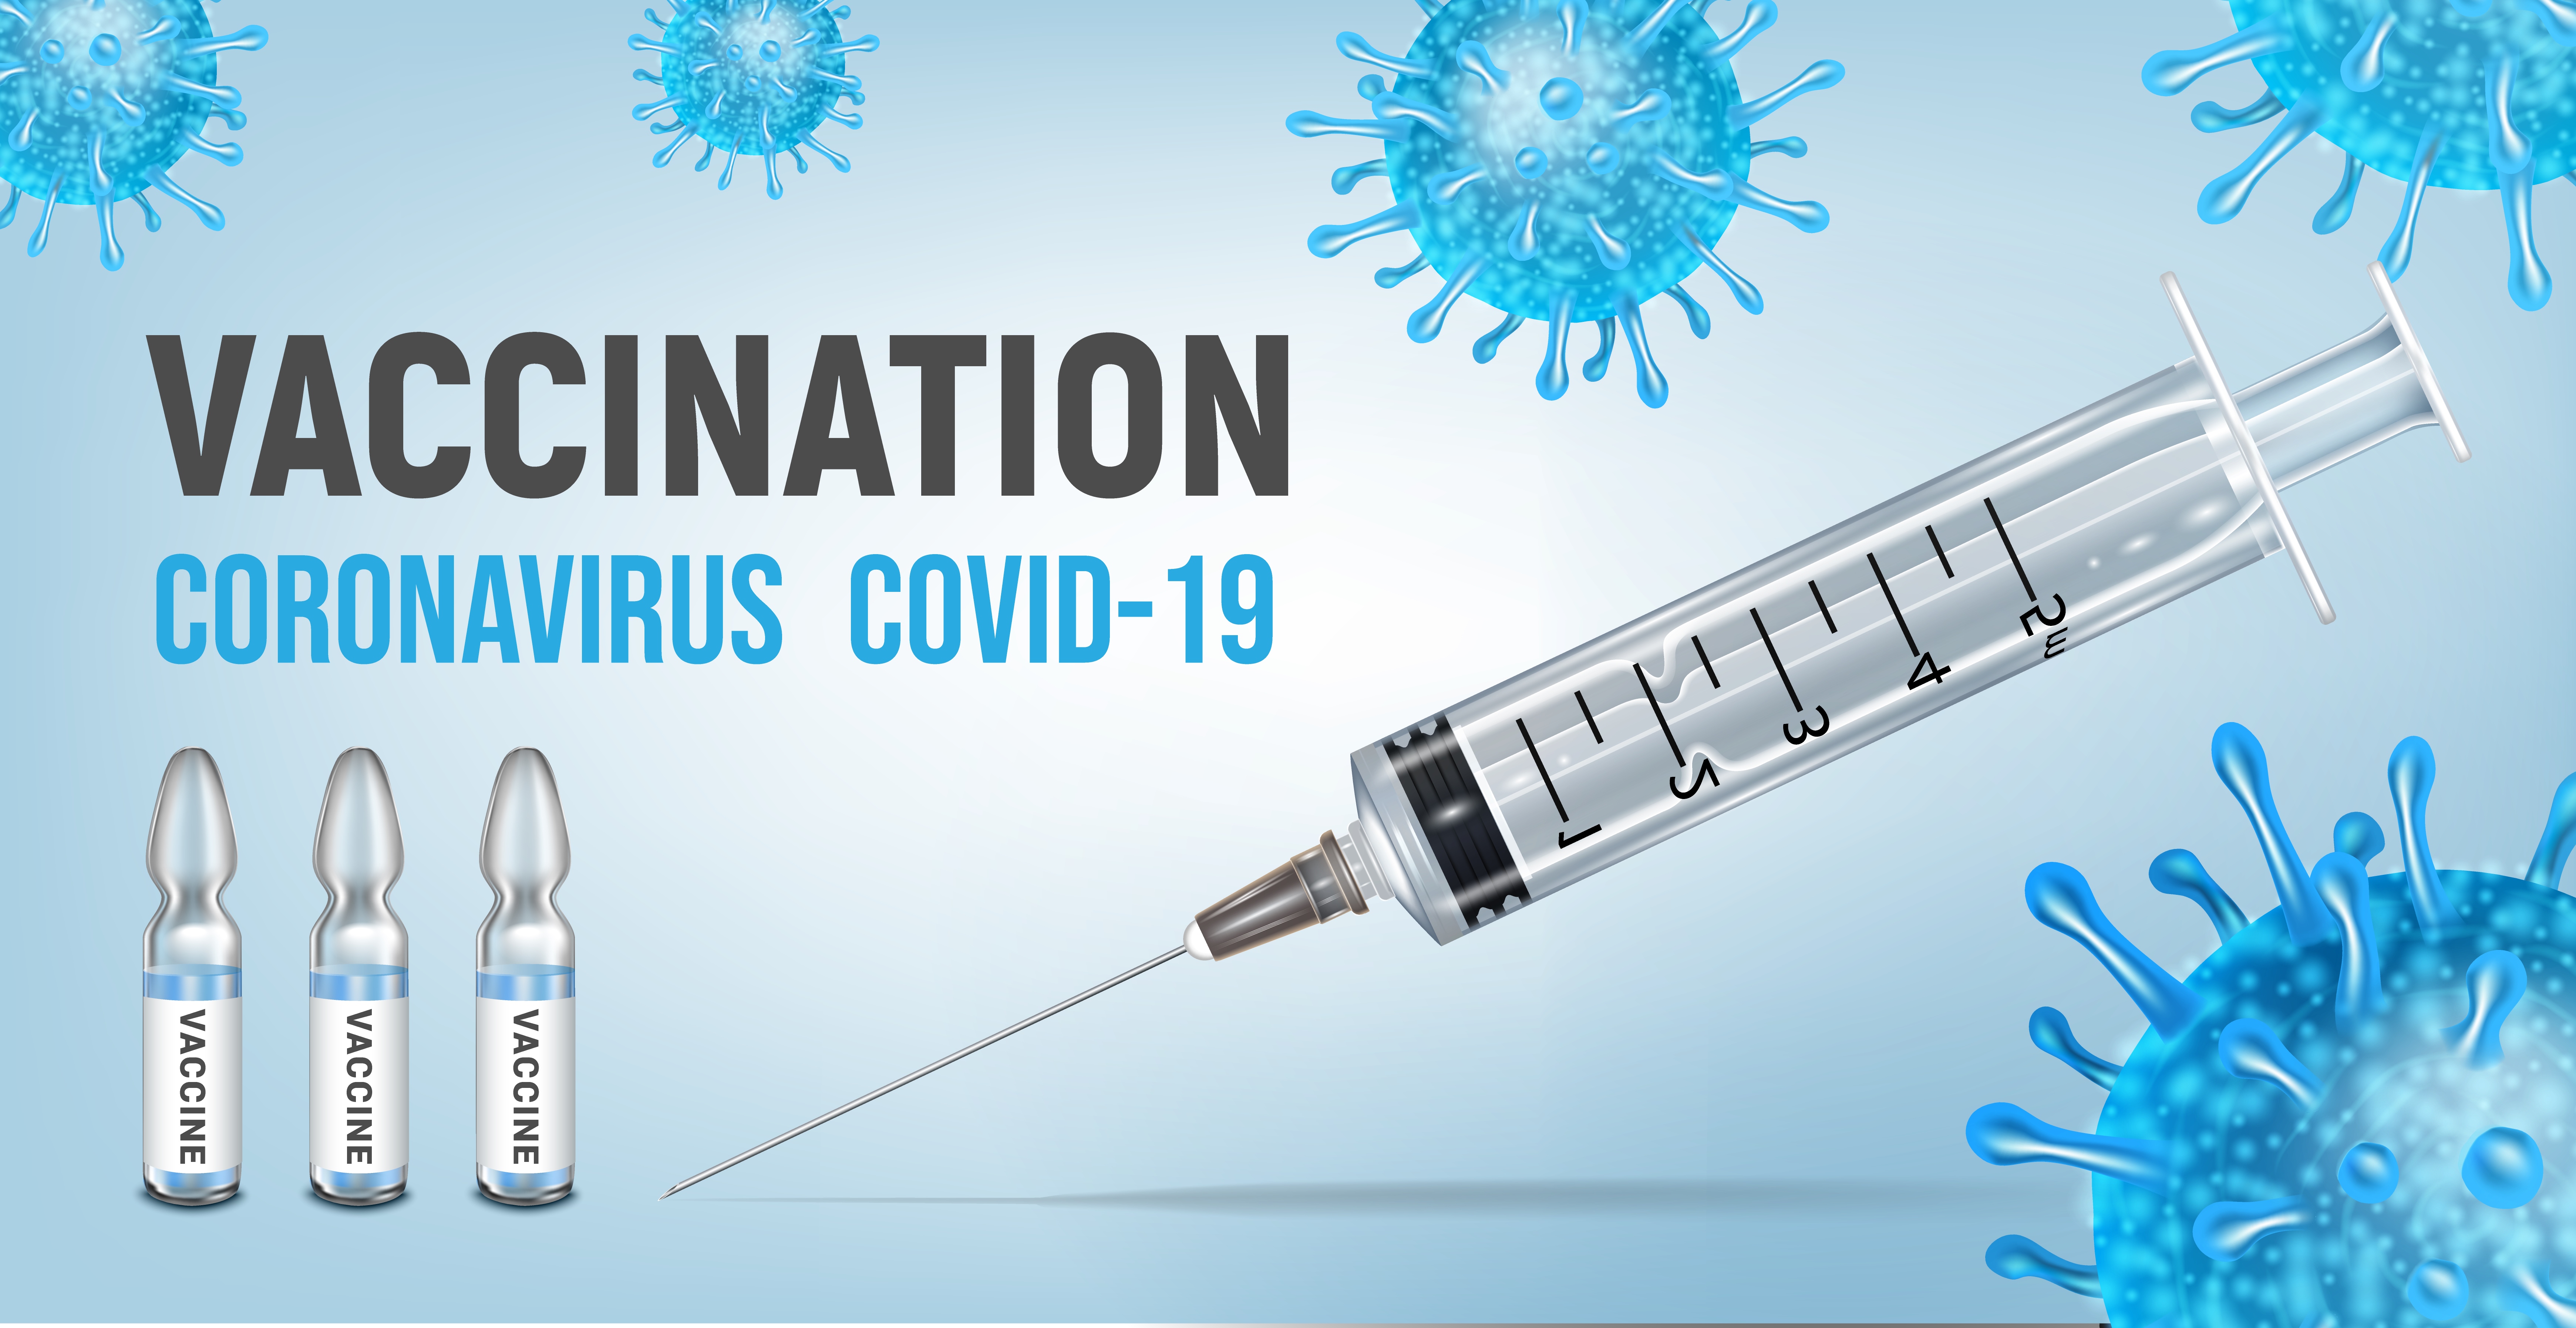 Прививка киров где сделать. Вакцинация Covid-19. Вакцинация картинки. Вакцинация от коронавируса баннер. Реклама вакцины от коронавируса.